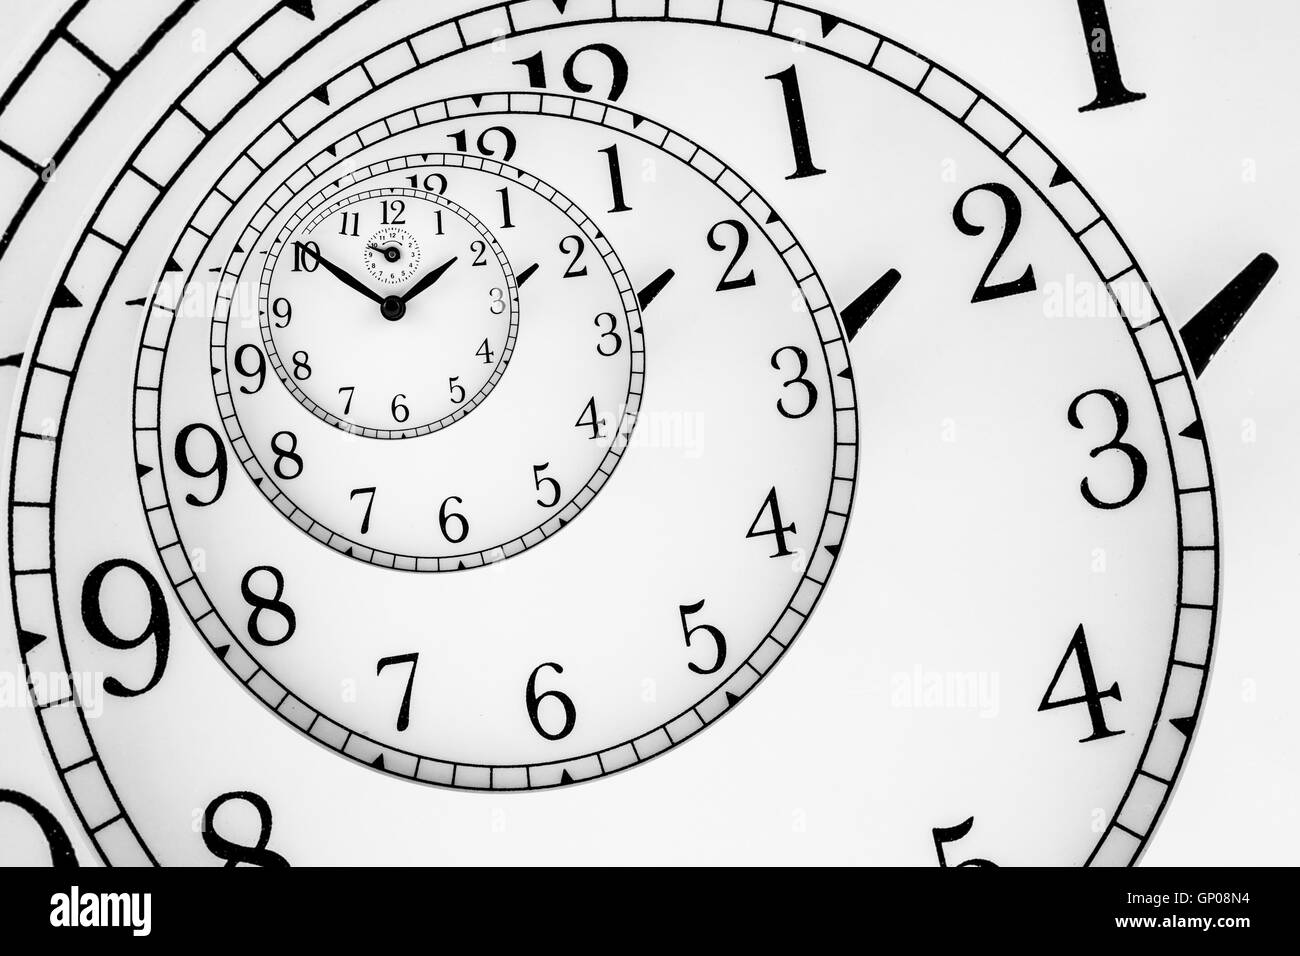 Détail d'une horloge mécanique avec quadrant hypnotique, concept très souple Banque D'Images